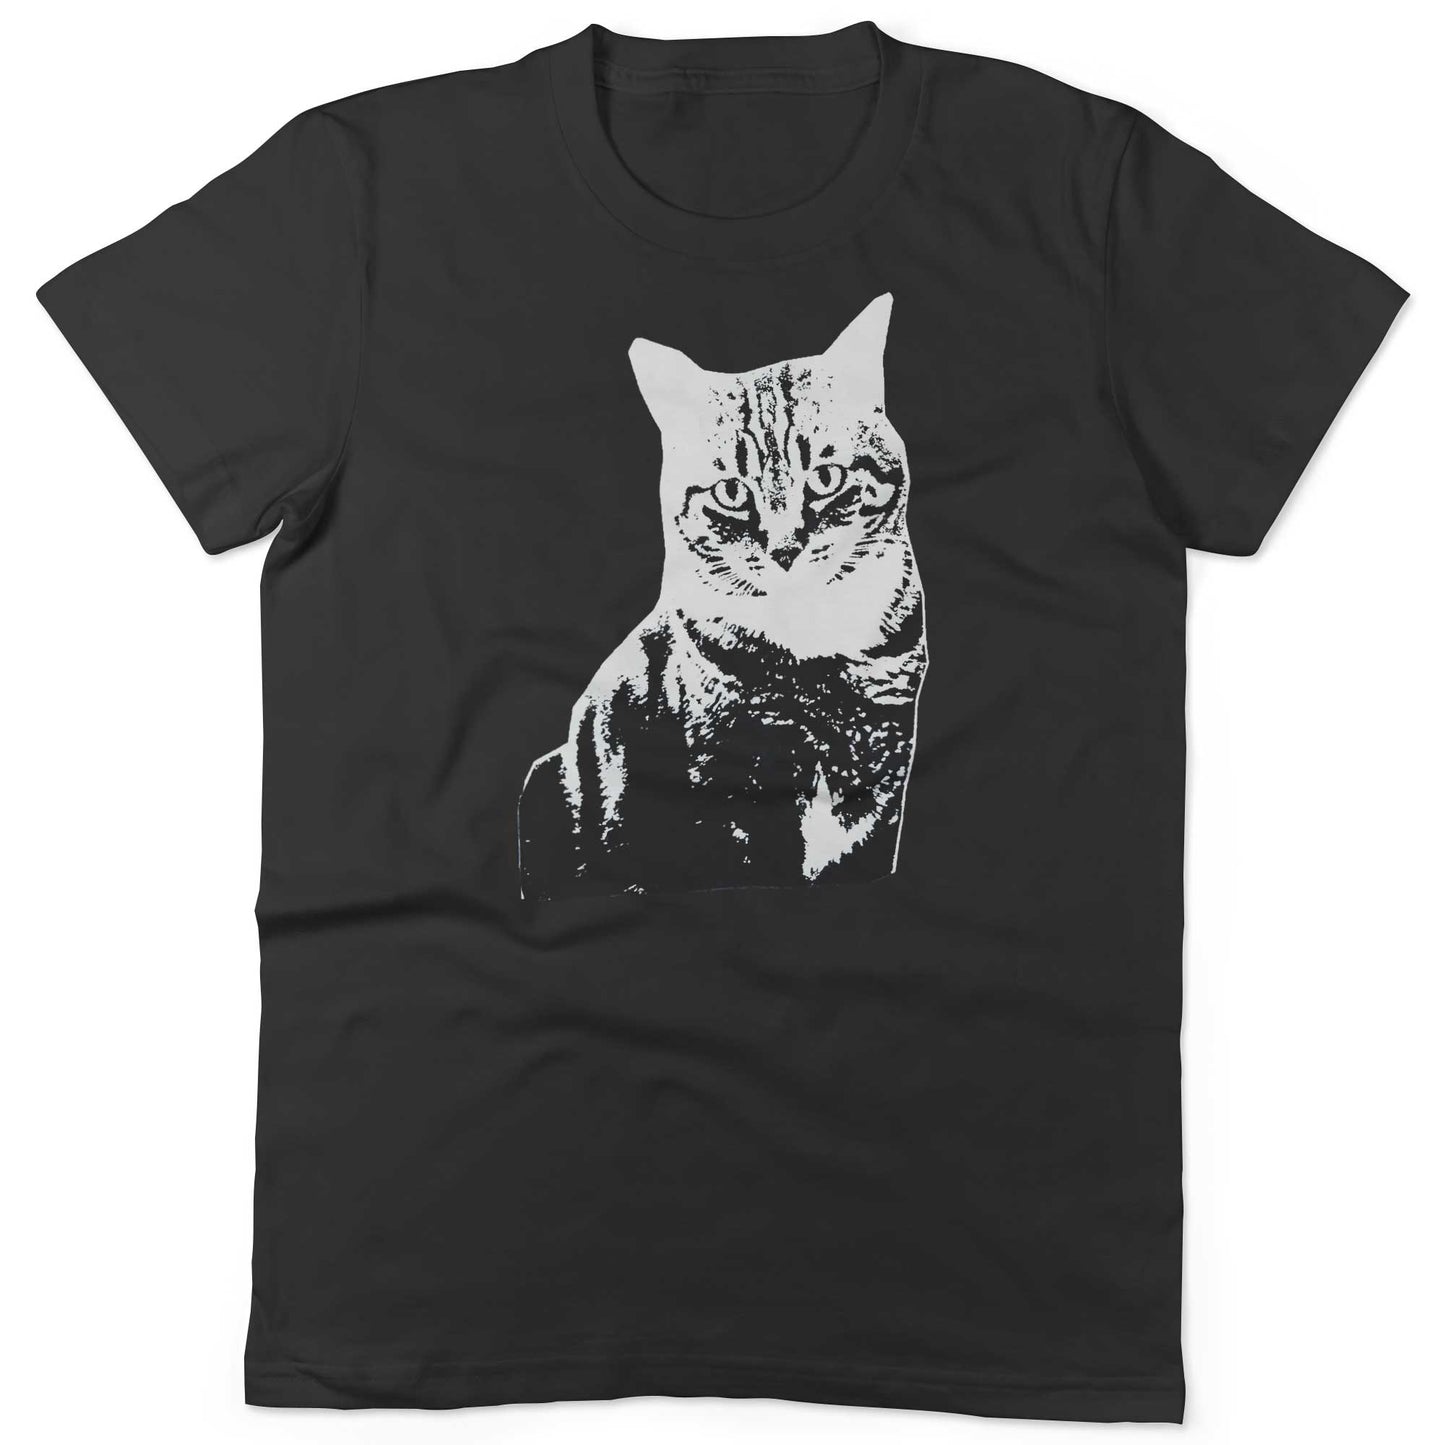 Black & White Cat Unisex Or Women's Cotton T-shirt-Black-Woman